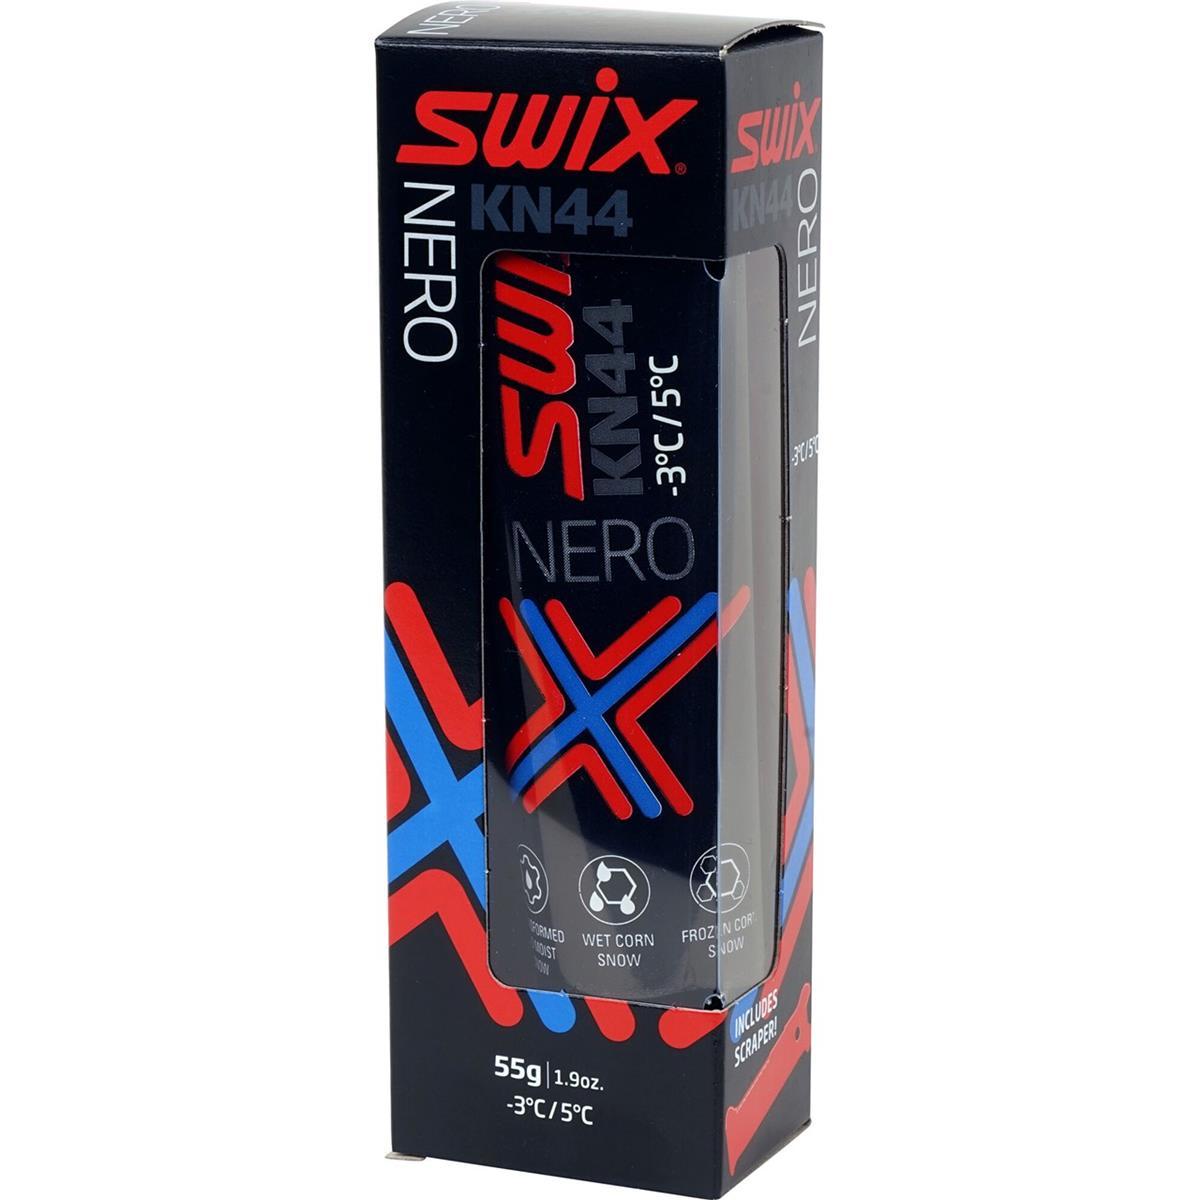 Swix KN44 Nero 55g -3/+5°